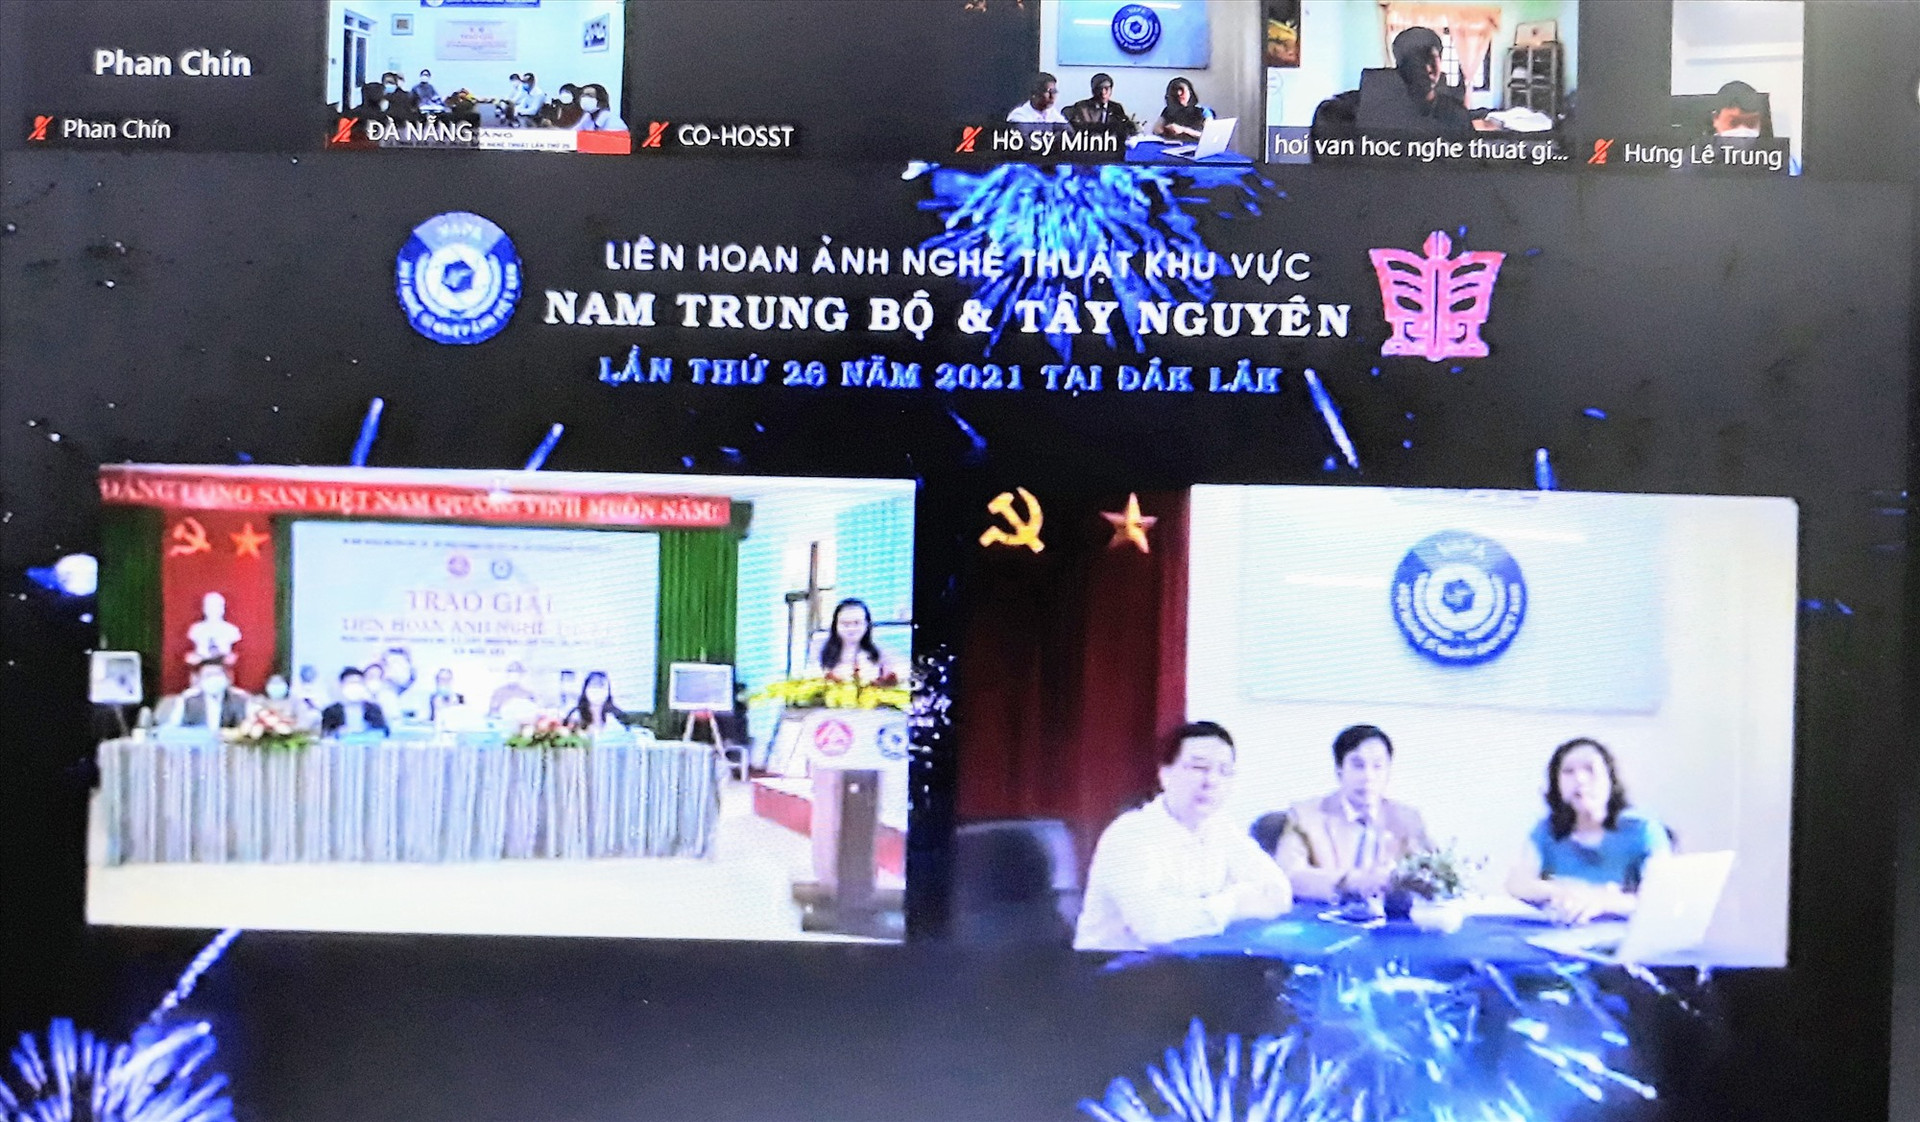 Các điểm cầu tại lễ tổng kết và trao giải Liên hoan Ảnh nghệ thuật khu vực V lần thứ 26. (Ảnh chụp qua màn hình)